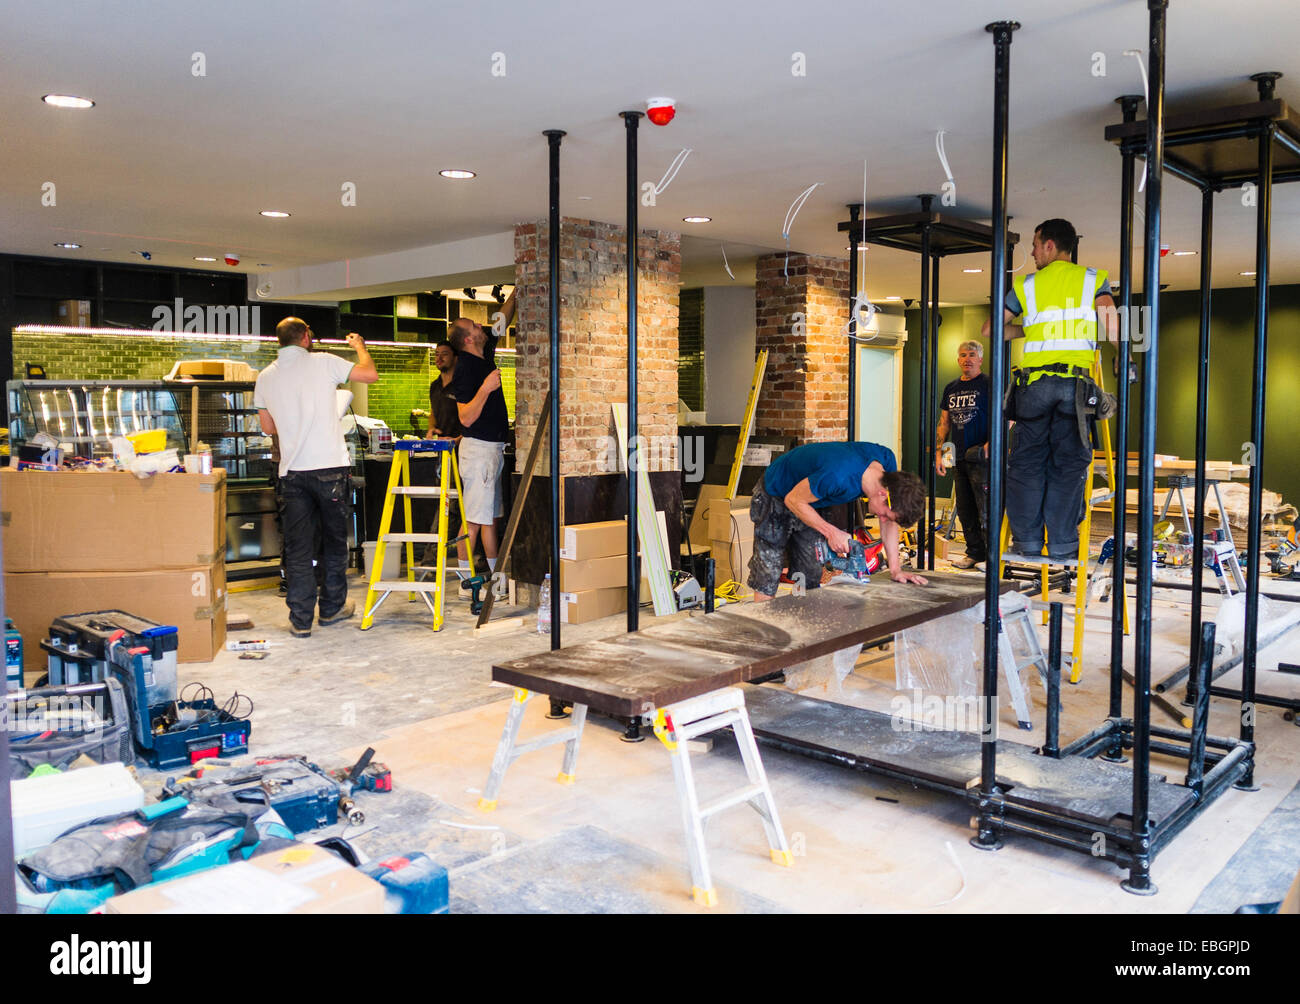 Intérieur : les travailleurs qui travaillent à l'aménagement d'une nouvelle branche de café Starbucks Cafe franchise Aberystwyth UK Banque D'Images